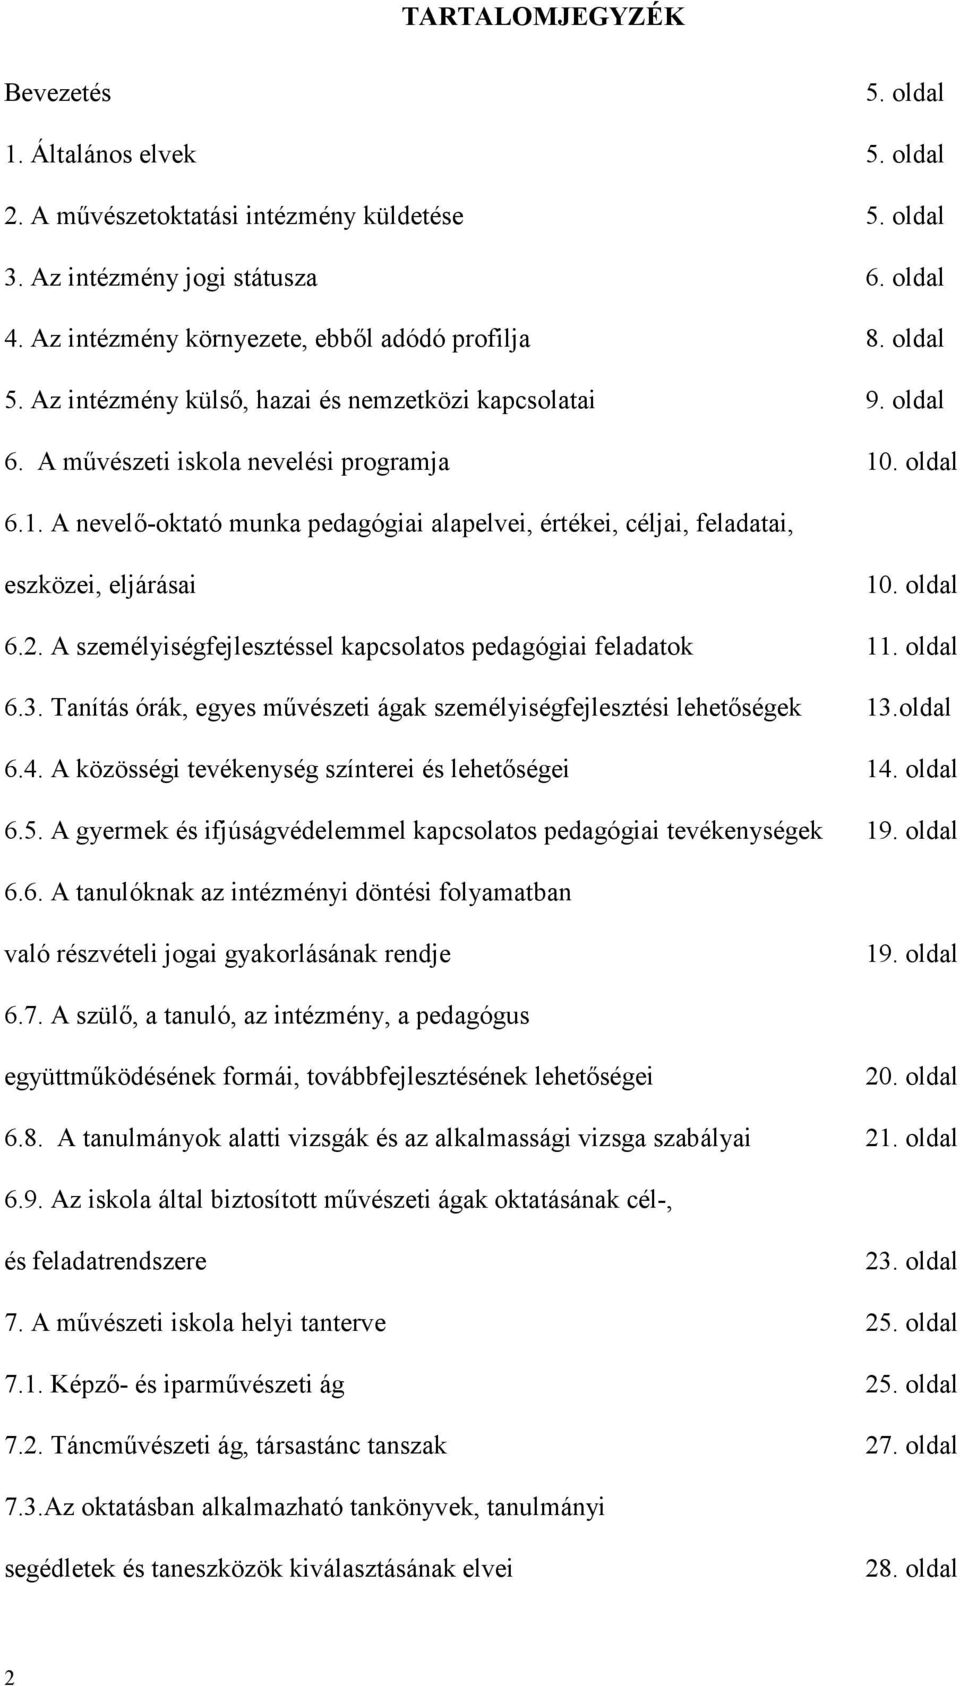 . oldal 6.1. A nevelı-oktató munka pedagógiai alapelvei, értékei, céljai, feladatai, eszközei, eljárásai 10. oldal 6.2. A személyiségfejlesztéssel kapcsolatos pedagógiai feladatok 11. oldal 6.3.